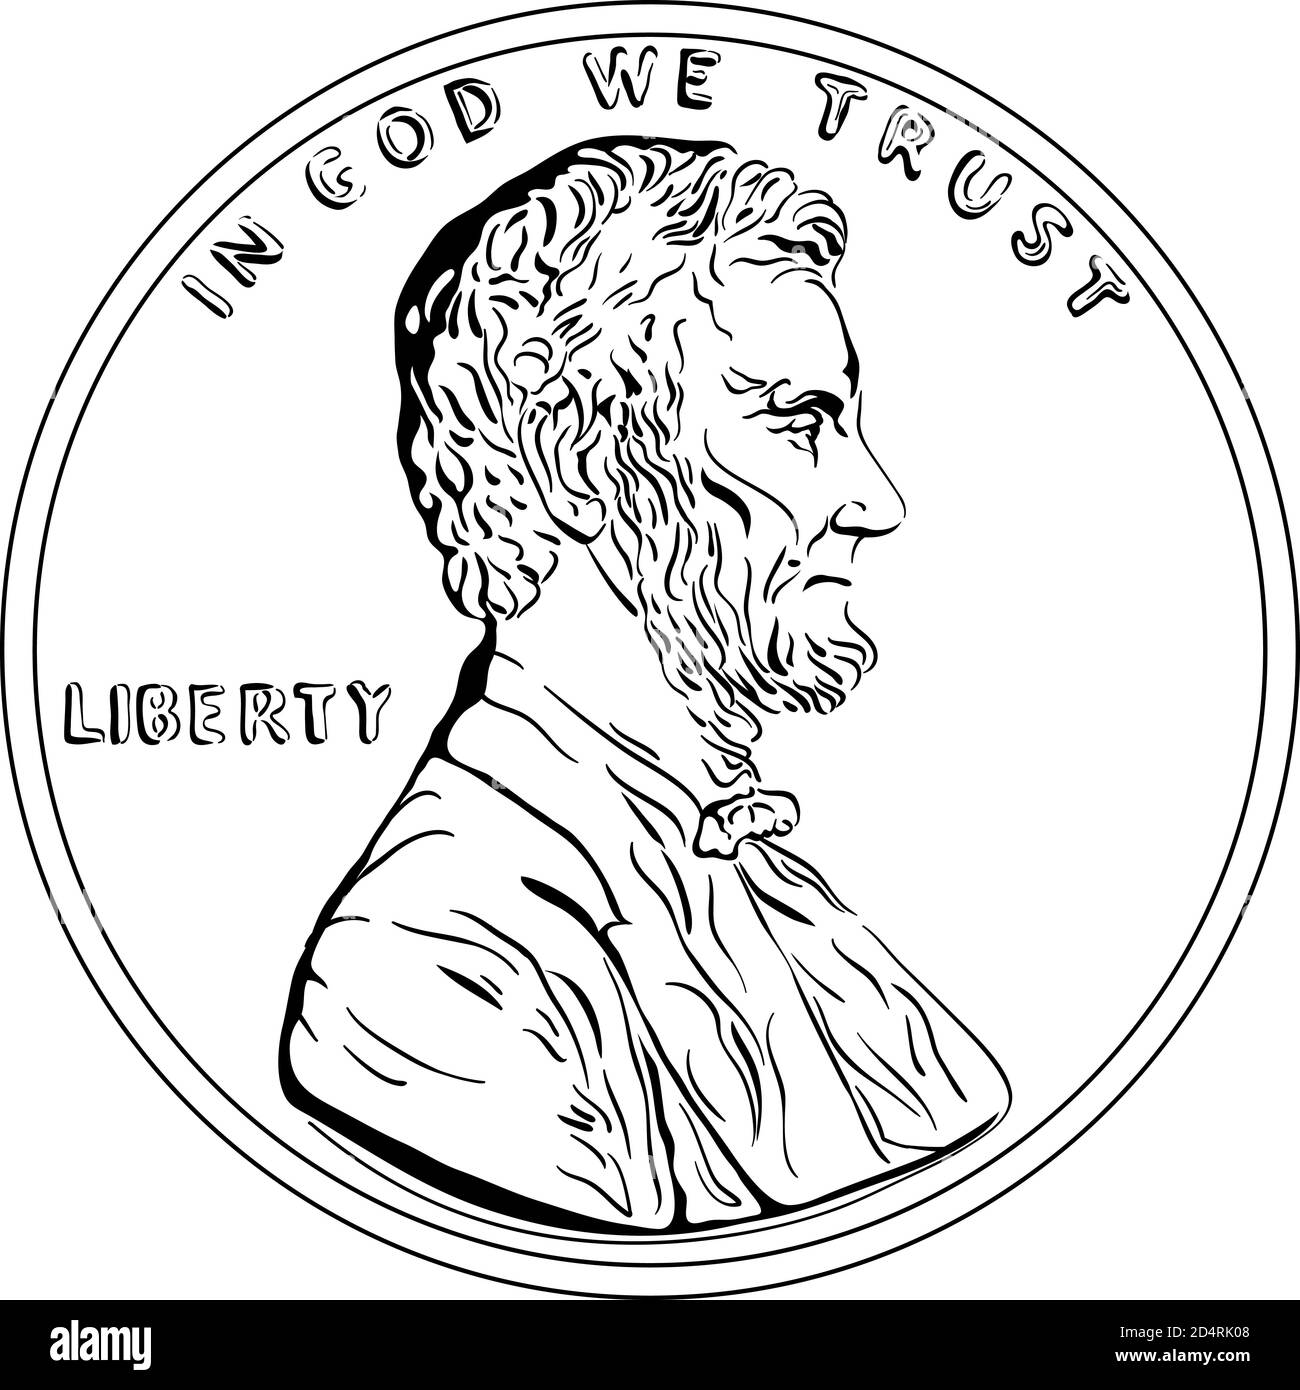 Soldi americani, un centesimo o un centesimo degli Stati Uniti, il presidente Lincoln su Obverse. Immagine in bianco e nero Illustrazione Vettoriale